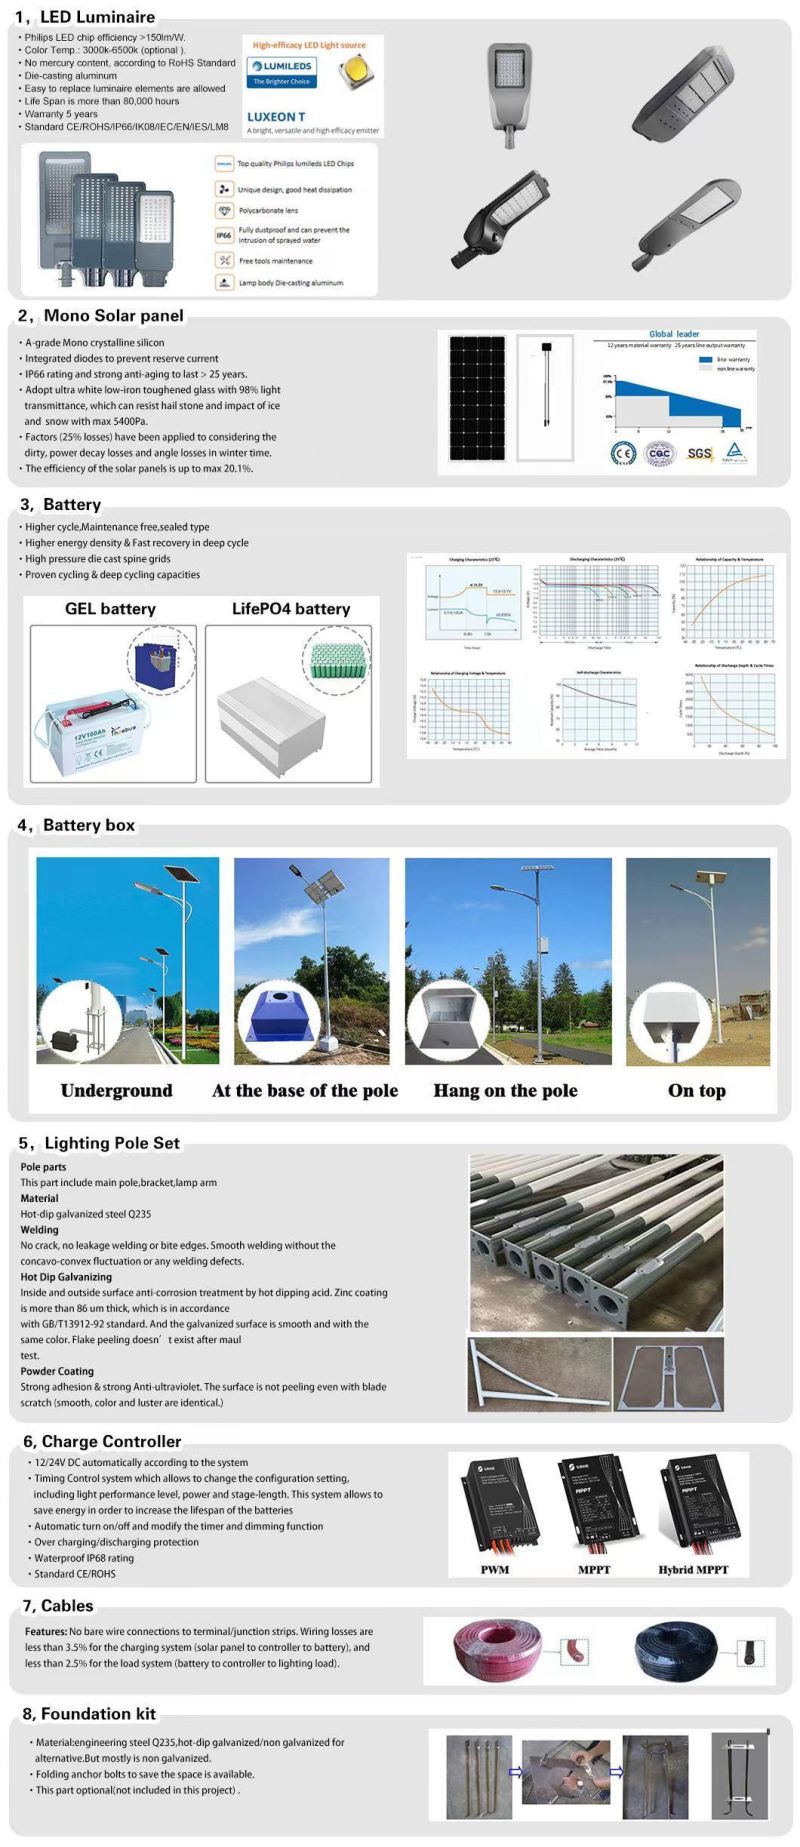 7m 40W Outdoor Waterproof High Efficiency Energy Saving Waterproof IP65 LED Solar Street Light